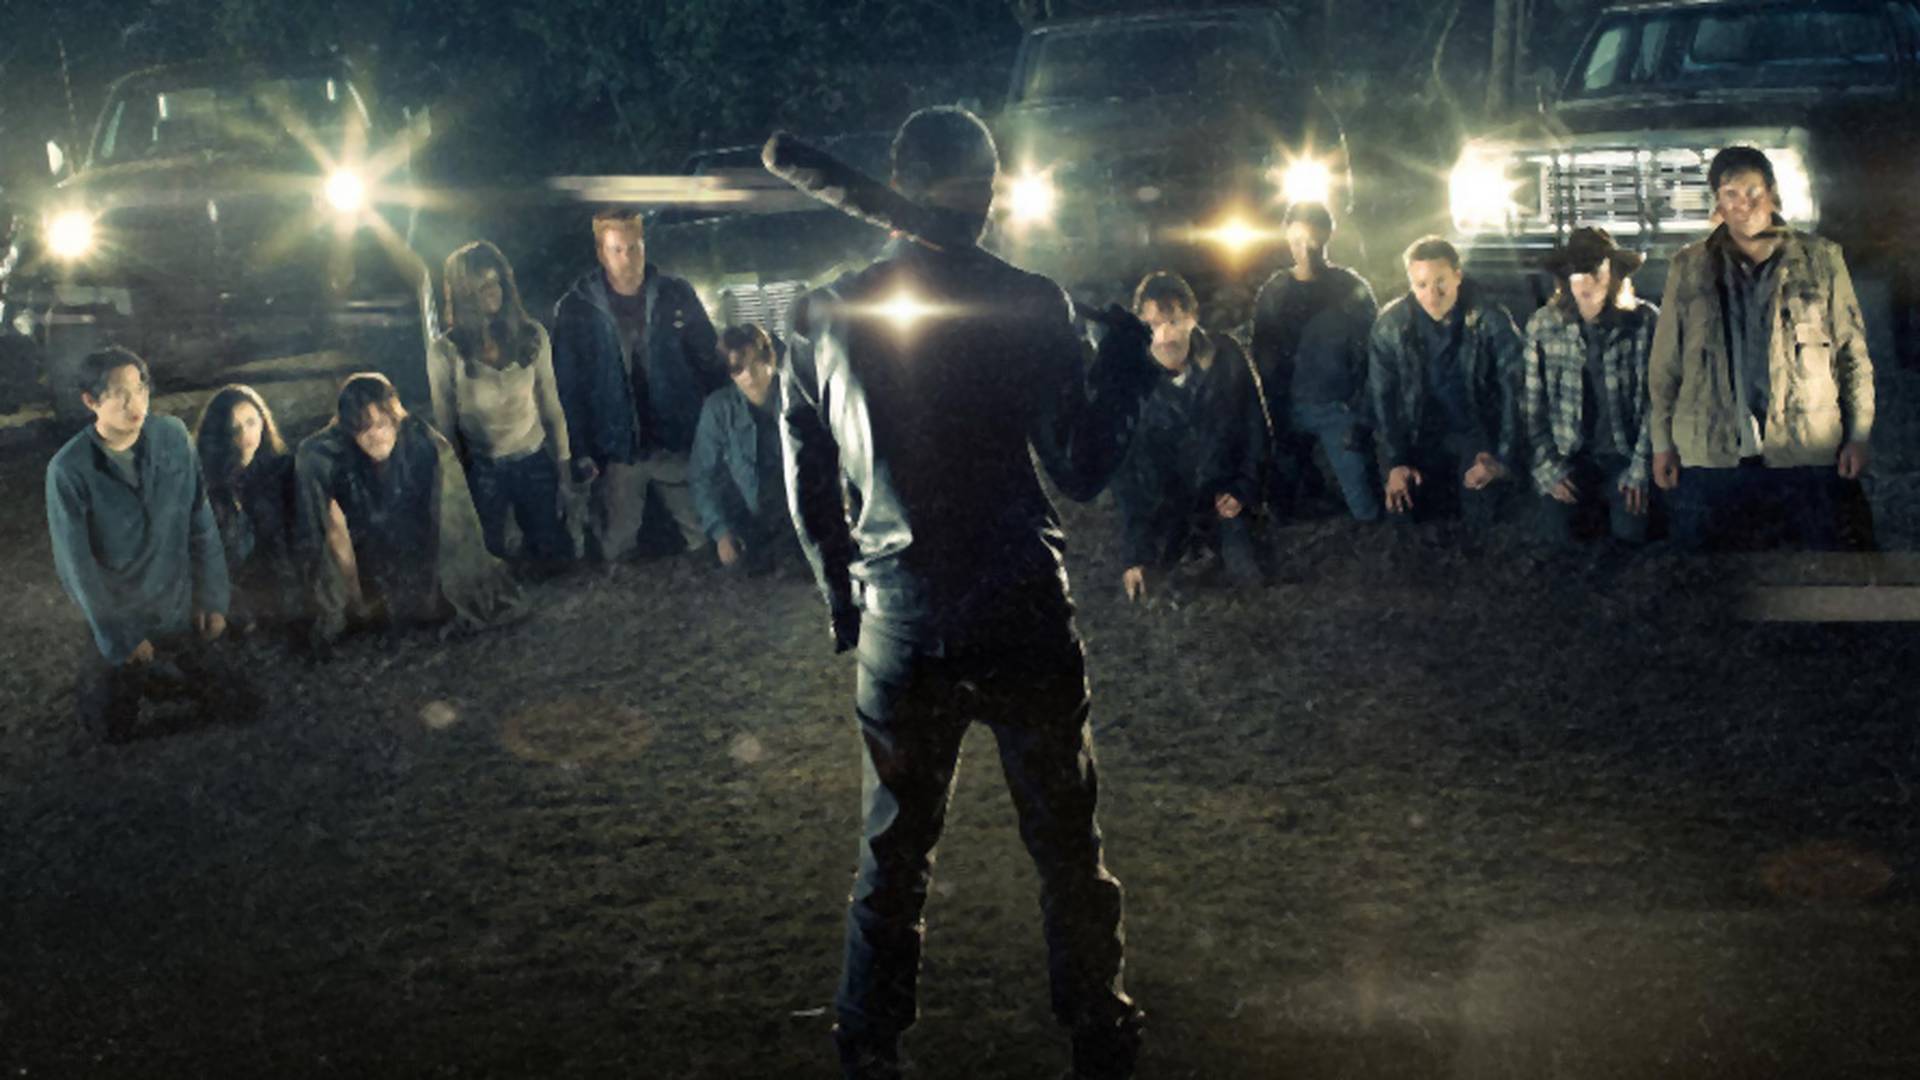 Nie czekaj na nowy sezon "The Walking Dead" w stresie. Zobacz najśmieszniejsze memy i gify z serialu